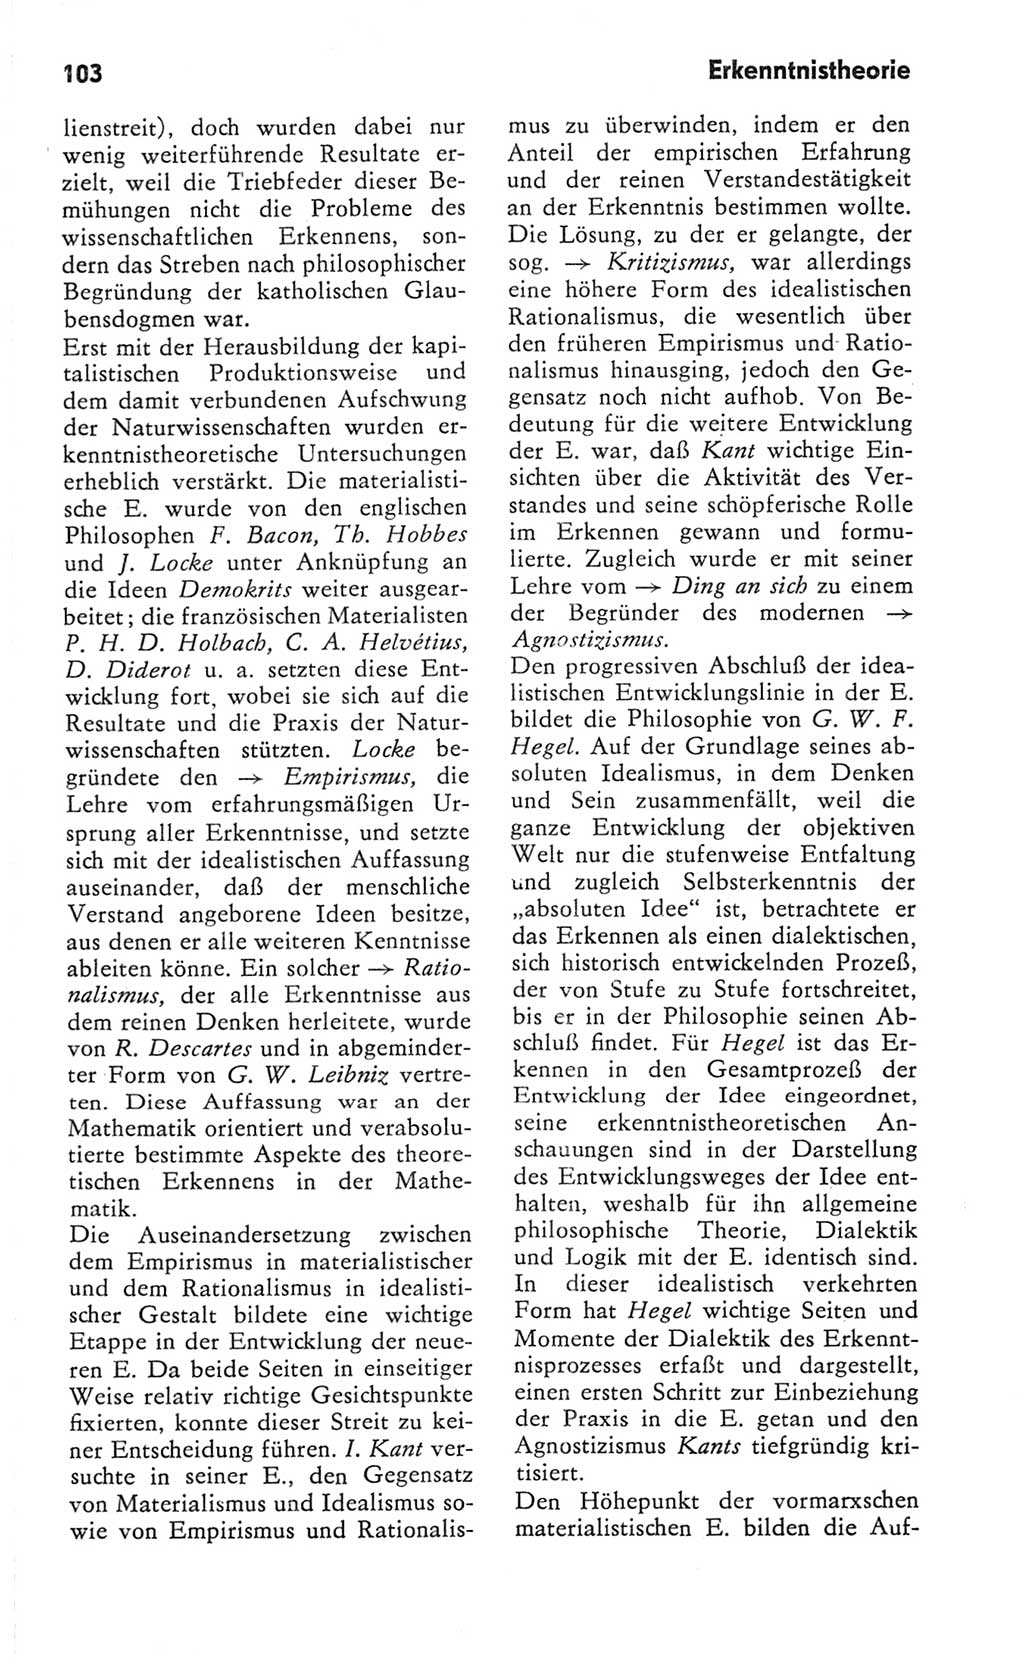 Kleines Wörterbuch der marxistisch-leninistischen Philosophie [Deutsche Demokratische Republik (DDR)] 1981, Seite 103 (Kl. Wb. ML Phil. DDR 1981, S. 103)